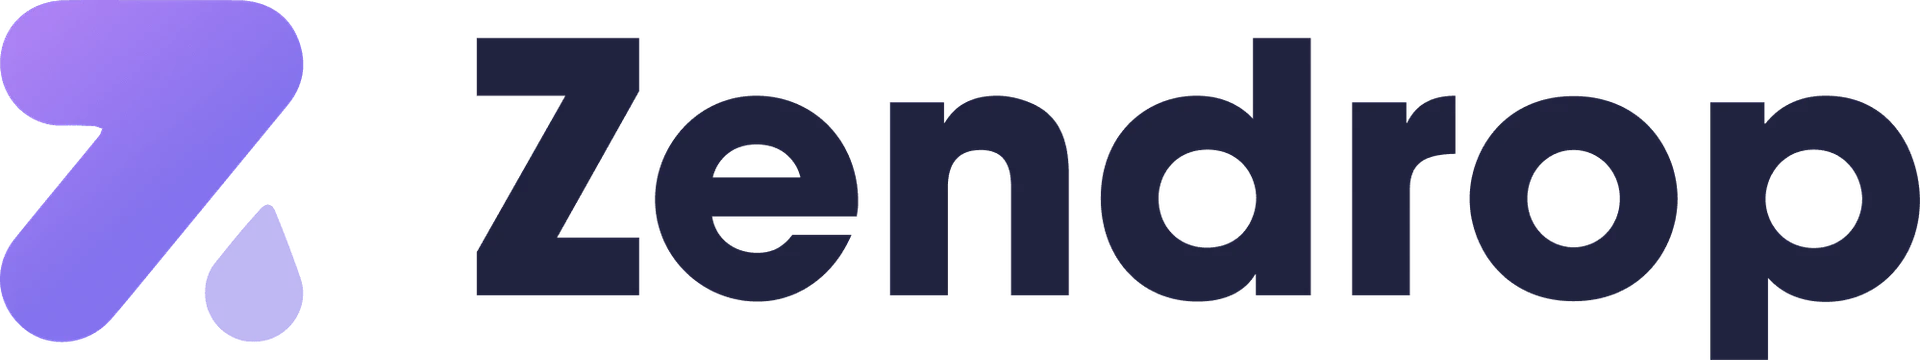 zendrop logo